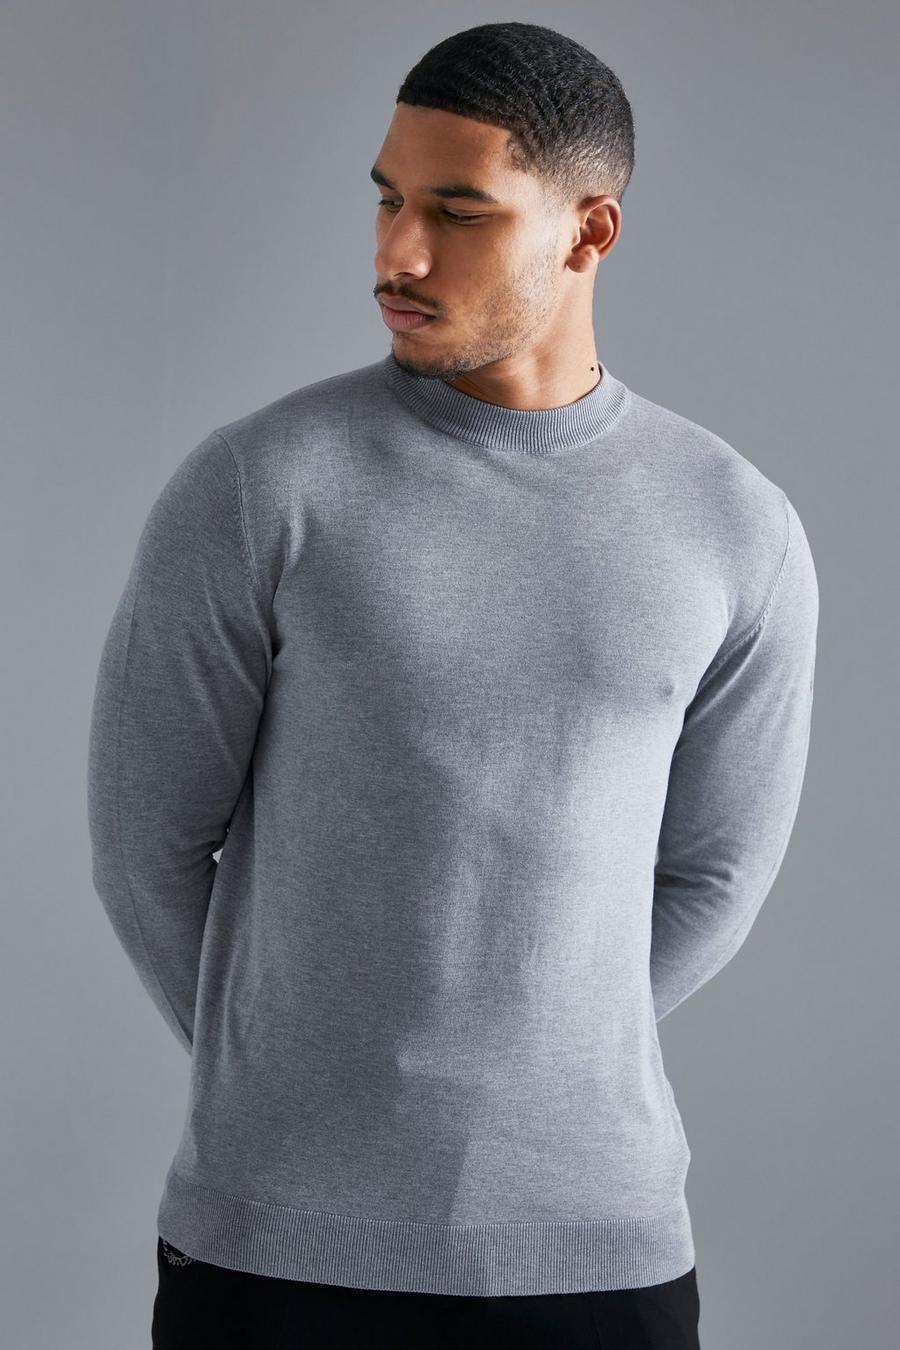 סלע אפור grigio סוודר בגזרה רגילה מבד ממוחזר עם צווארון גולף, לגברים גבוהים